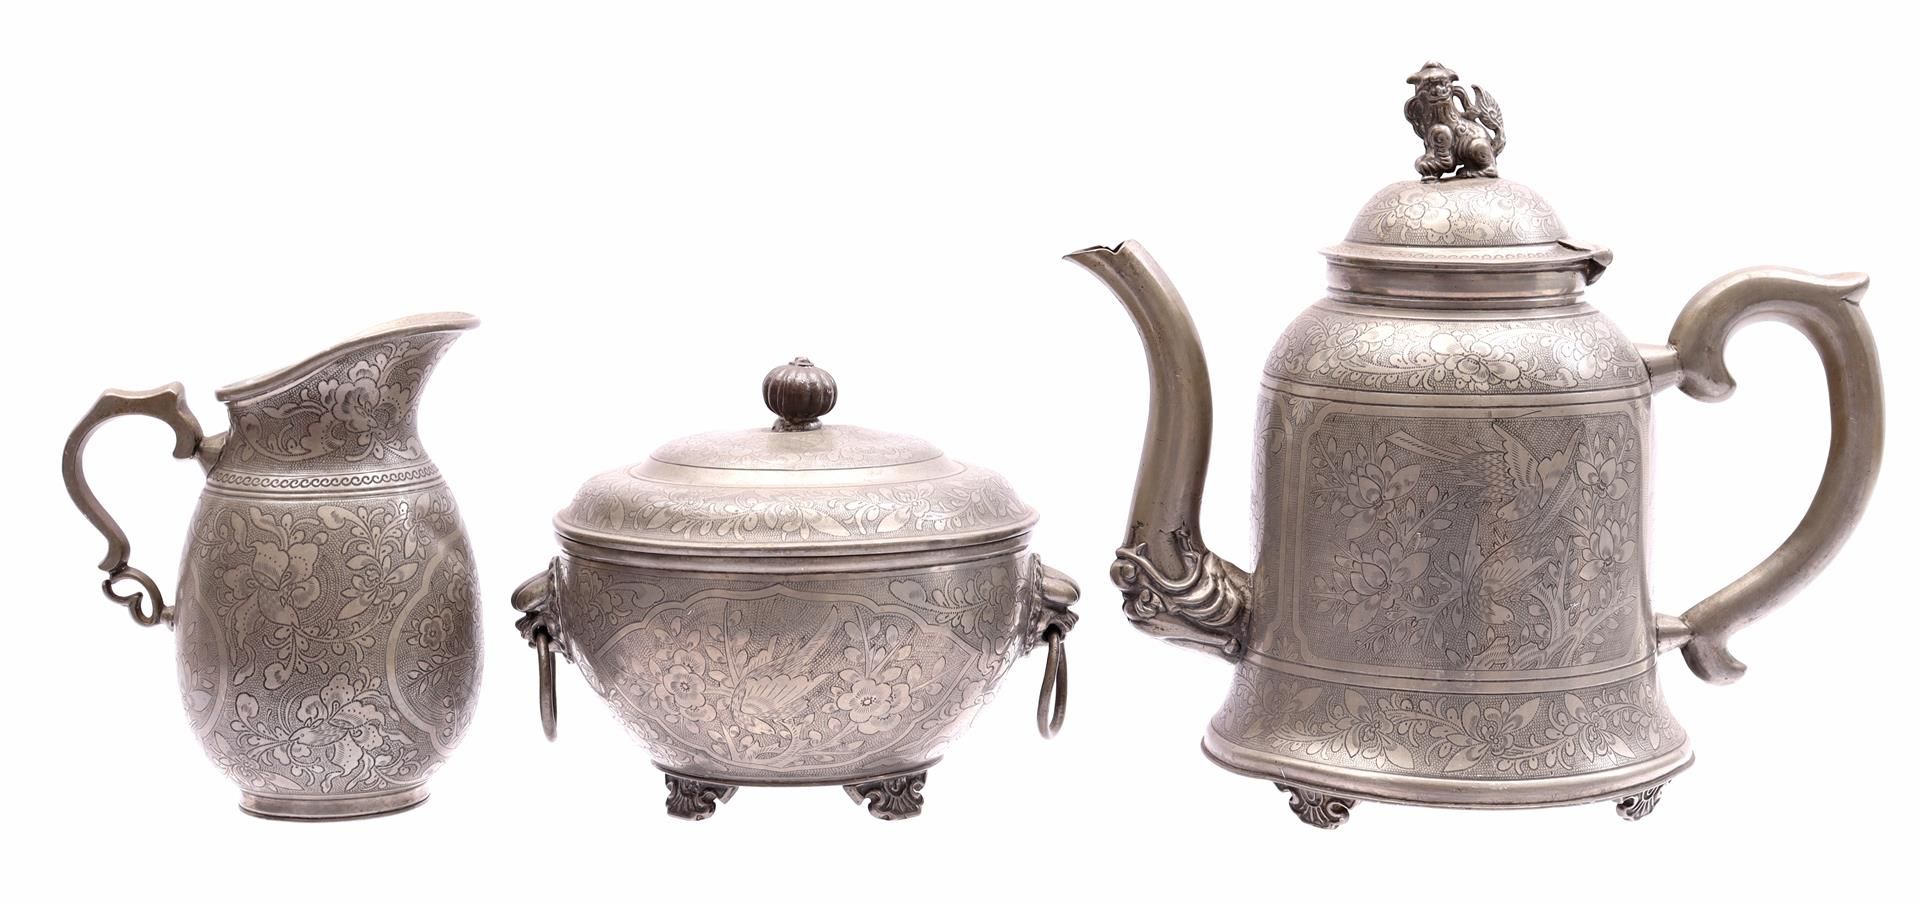 Pewter teapot, milk jug and lidded pot